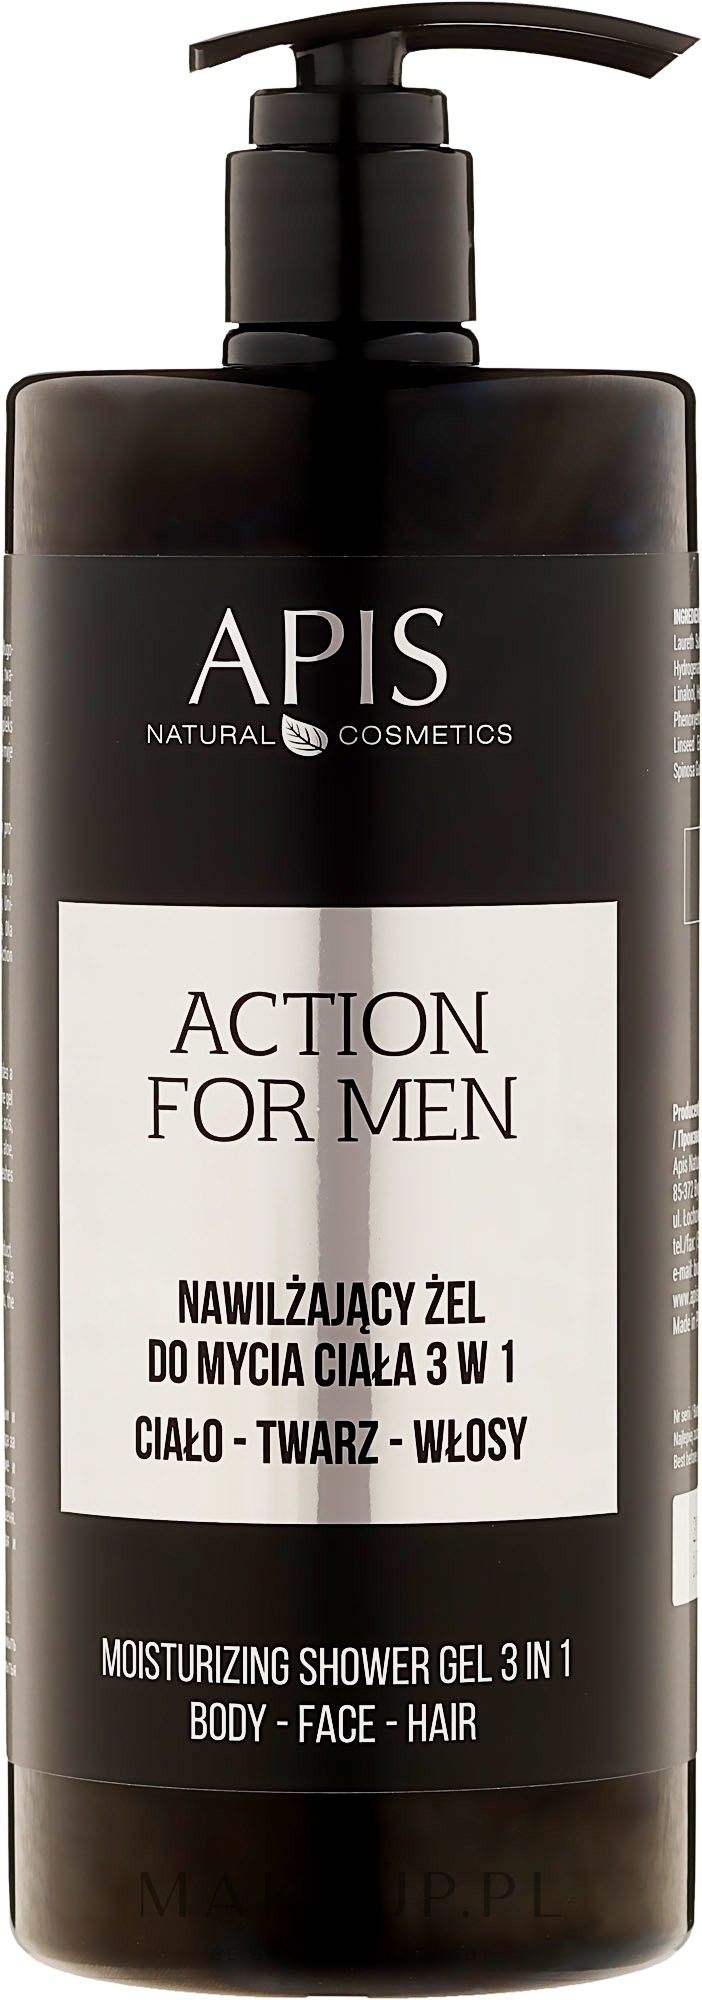 Nawilżający żel do mycia ciała 3 w 1 - APIS Professional Action For Men — Zdjęcie 1000 ml